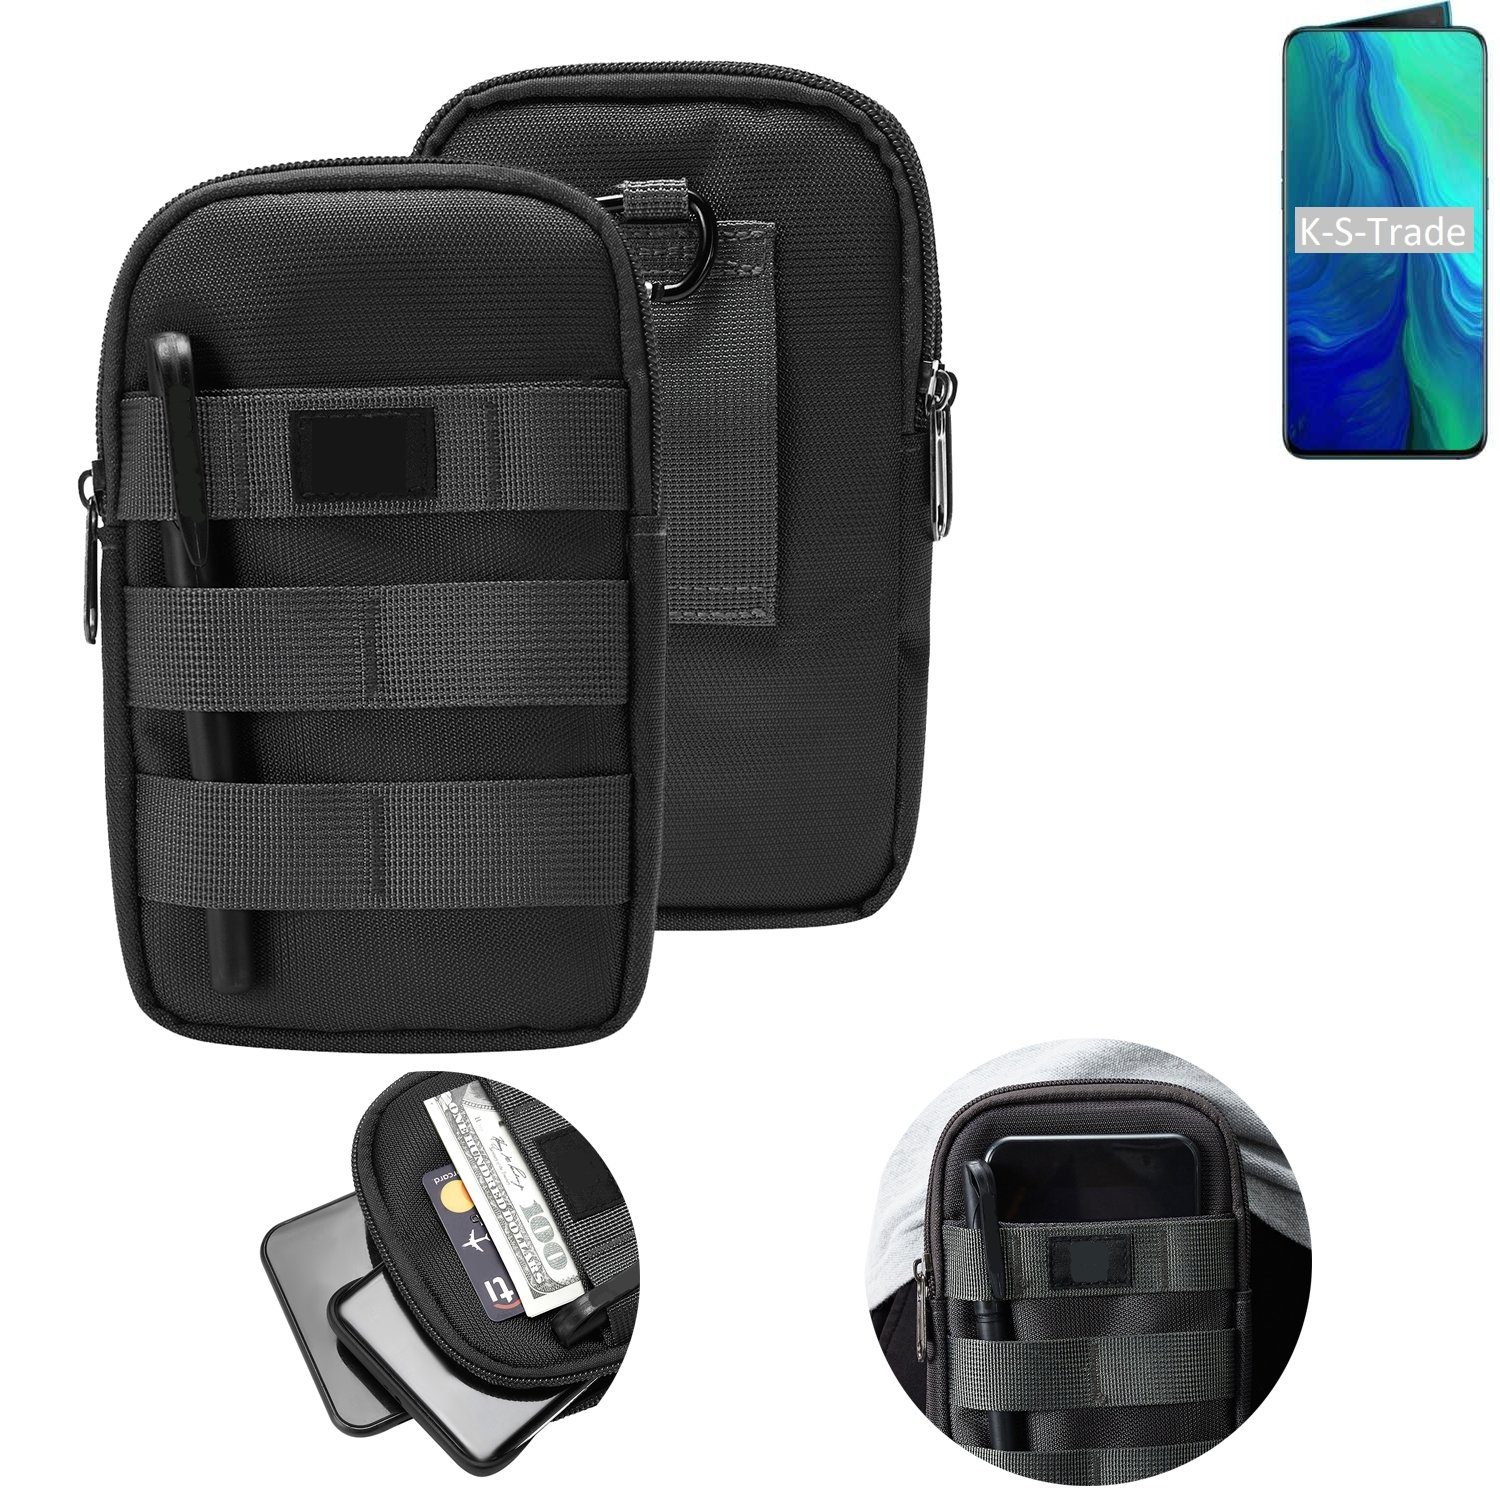 K-S-Trade Handyhülle für Oppo Reno, Holster Gürtel Tasche Handy Tasche Schutz Hülle dunkel-grau viele